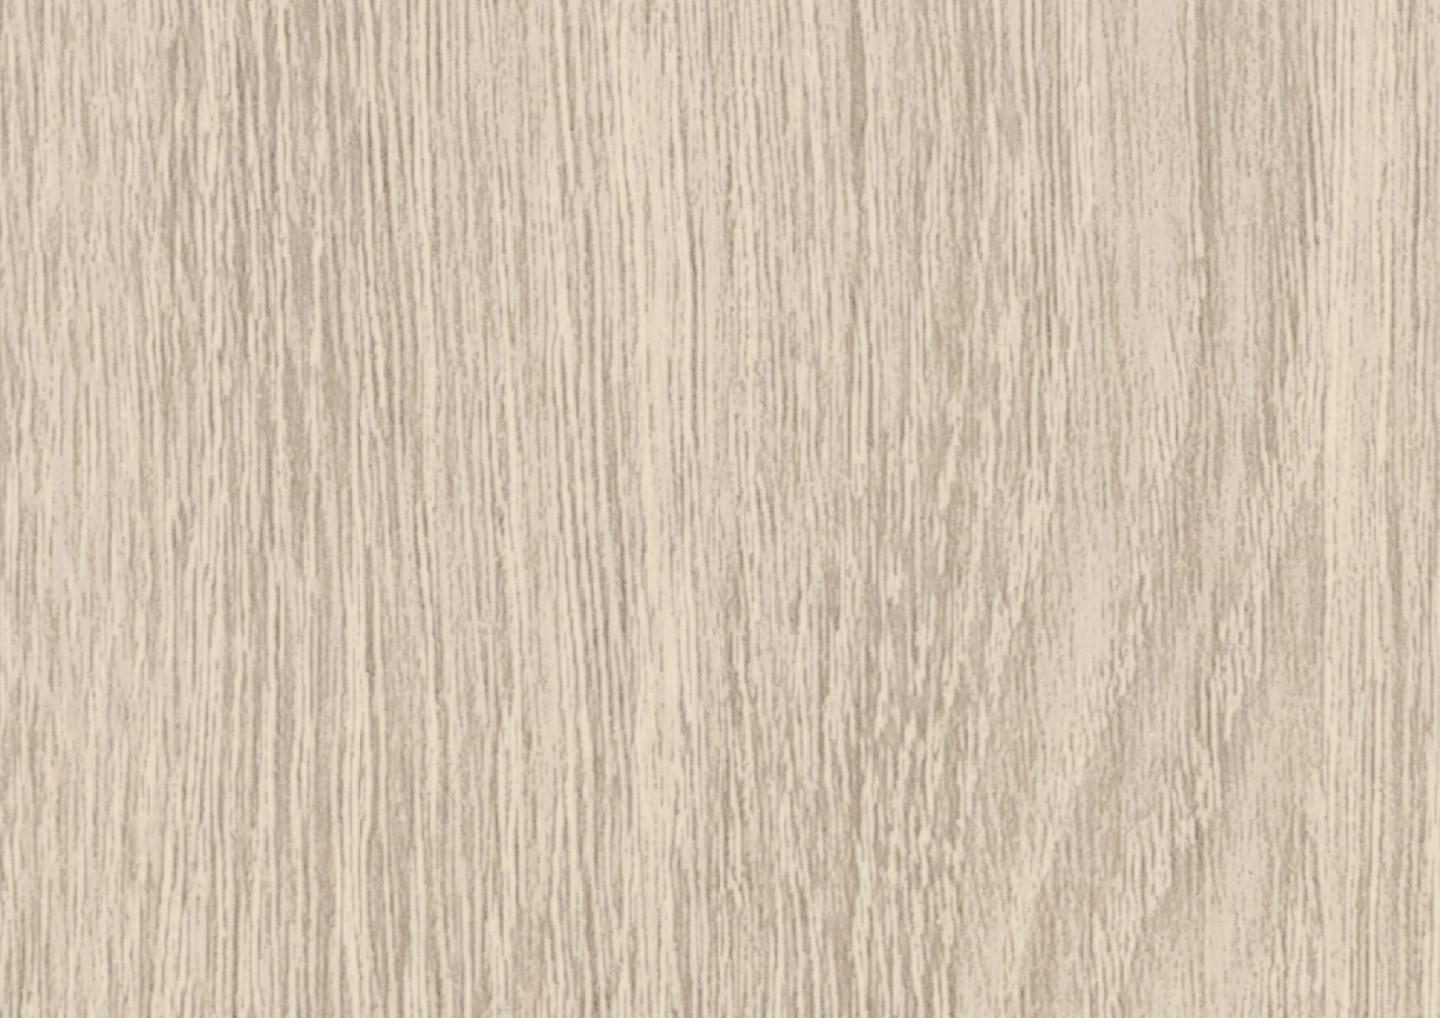 Composite PVC - White Oak Color Options